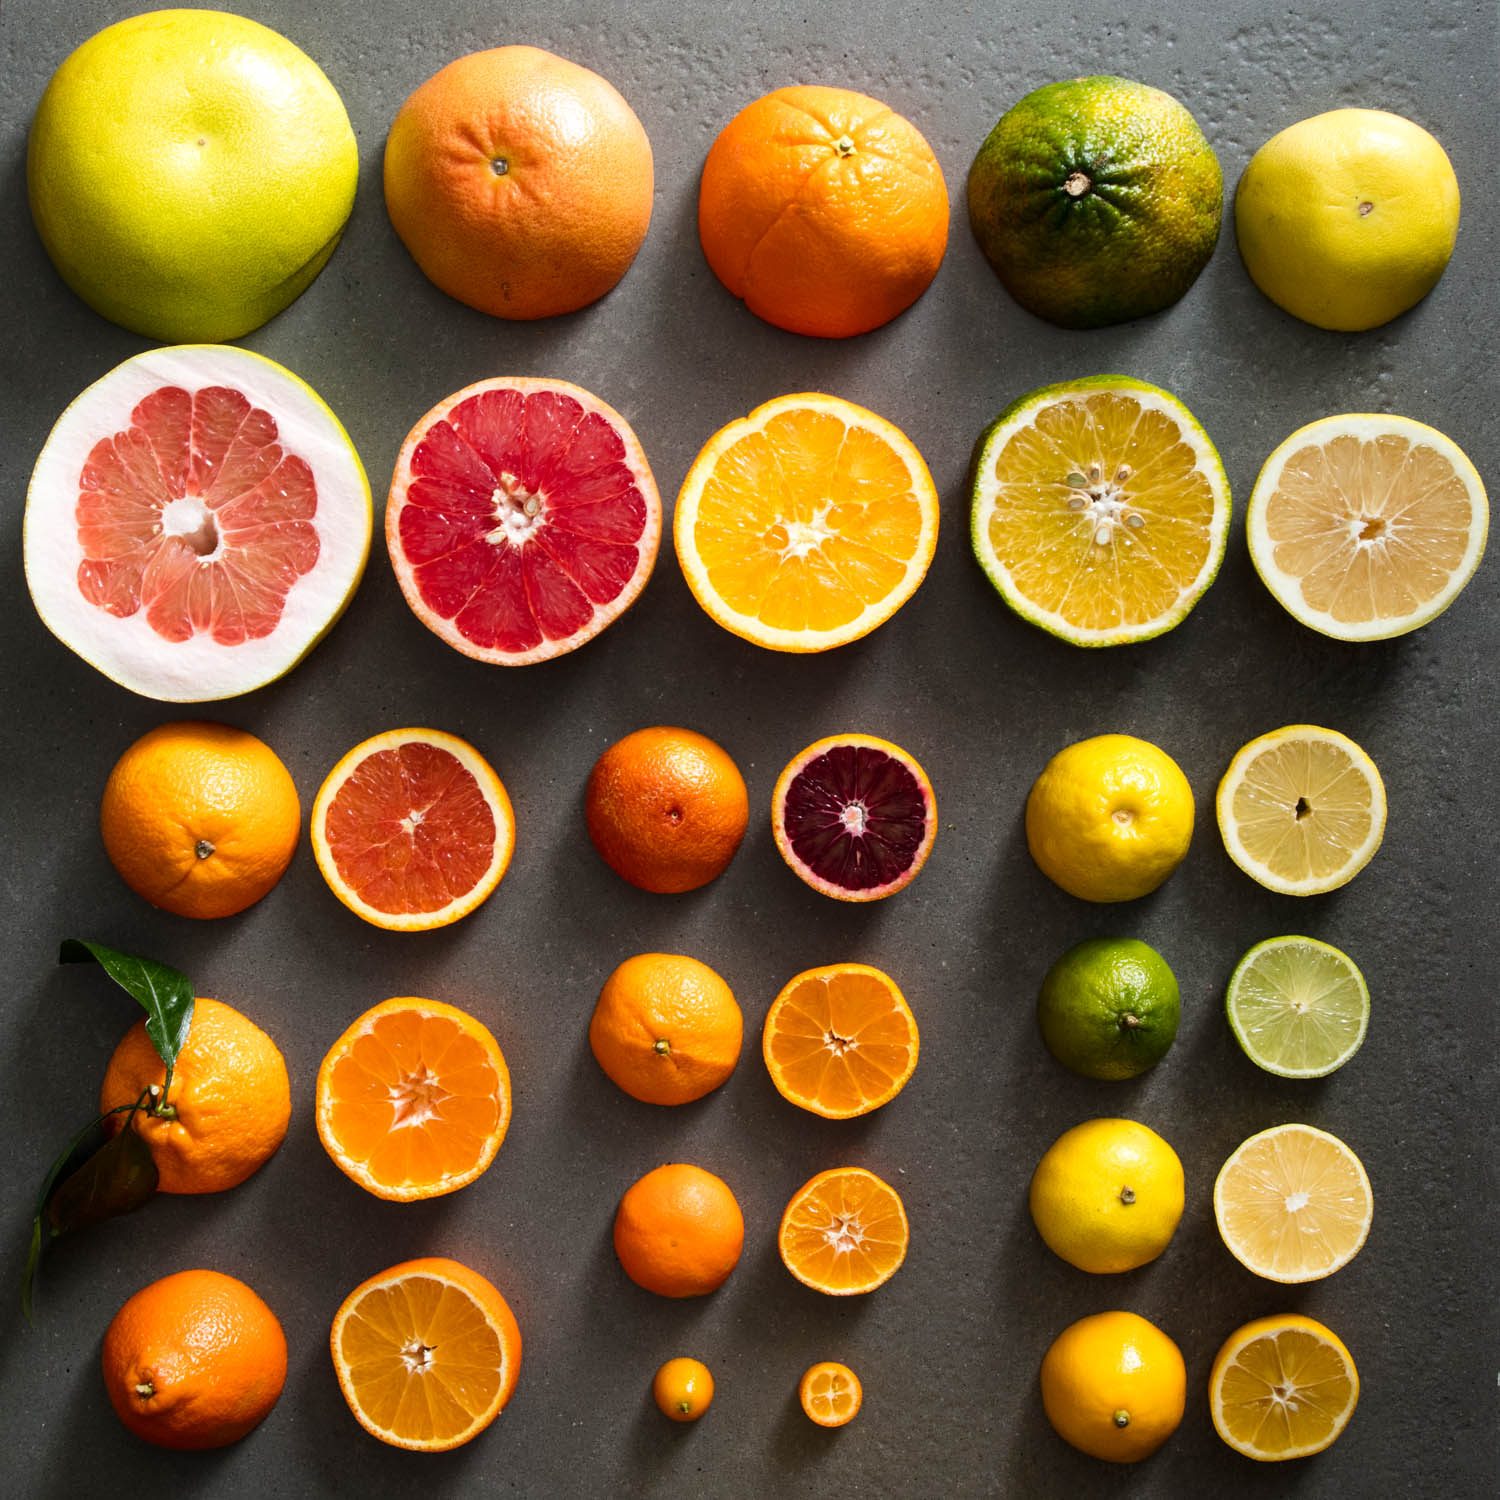 Фото фруктов и их названия. Фрукт цитрус кумкват. Апельсин мандарин грейпфрут. Апельсин, лимон, мандарин, грейпфрут, Цитрон. Грейпфрут, мандарин, лайм.